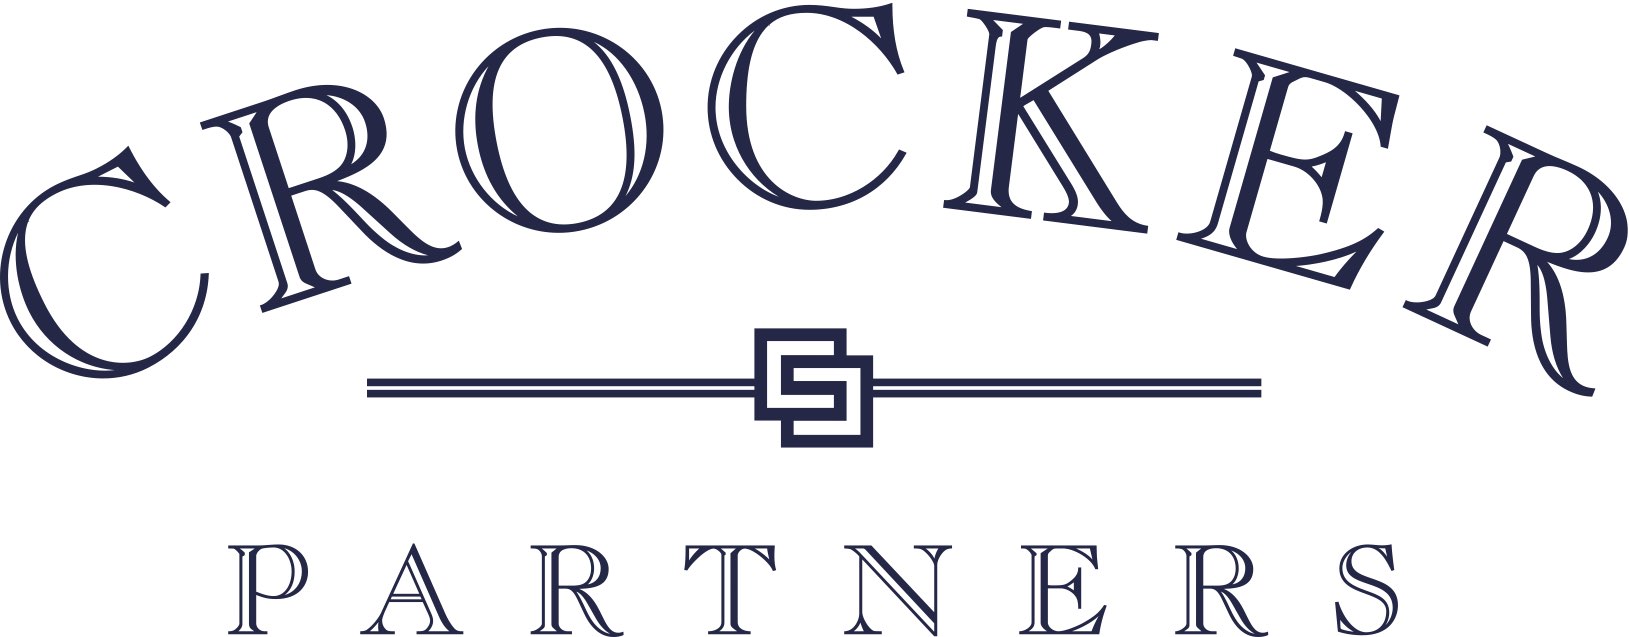 Crocker Partners Logo